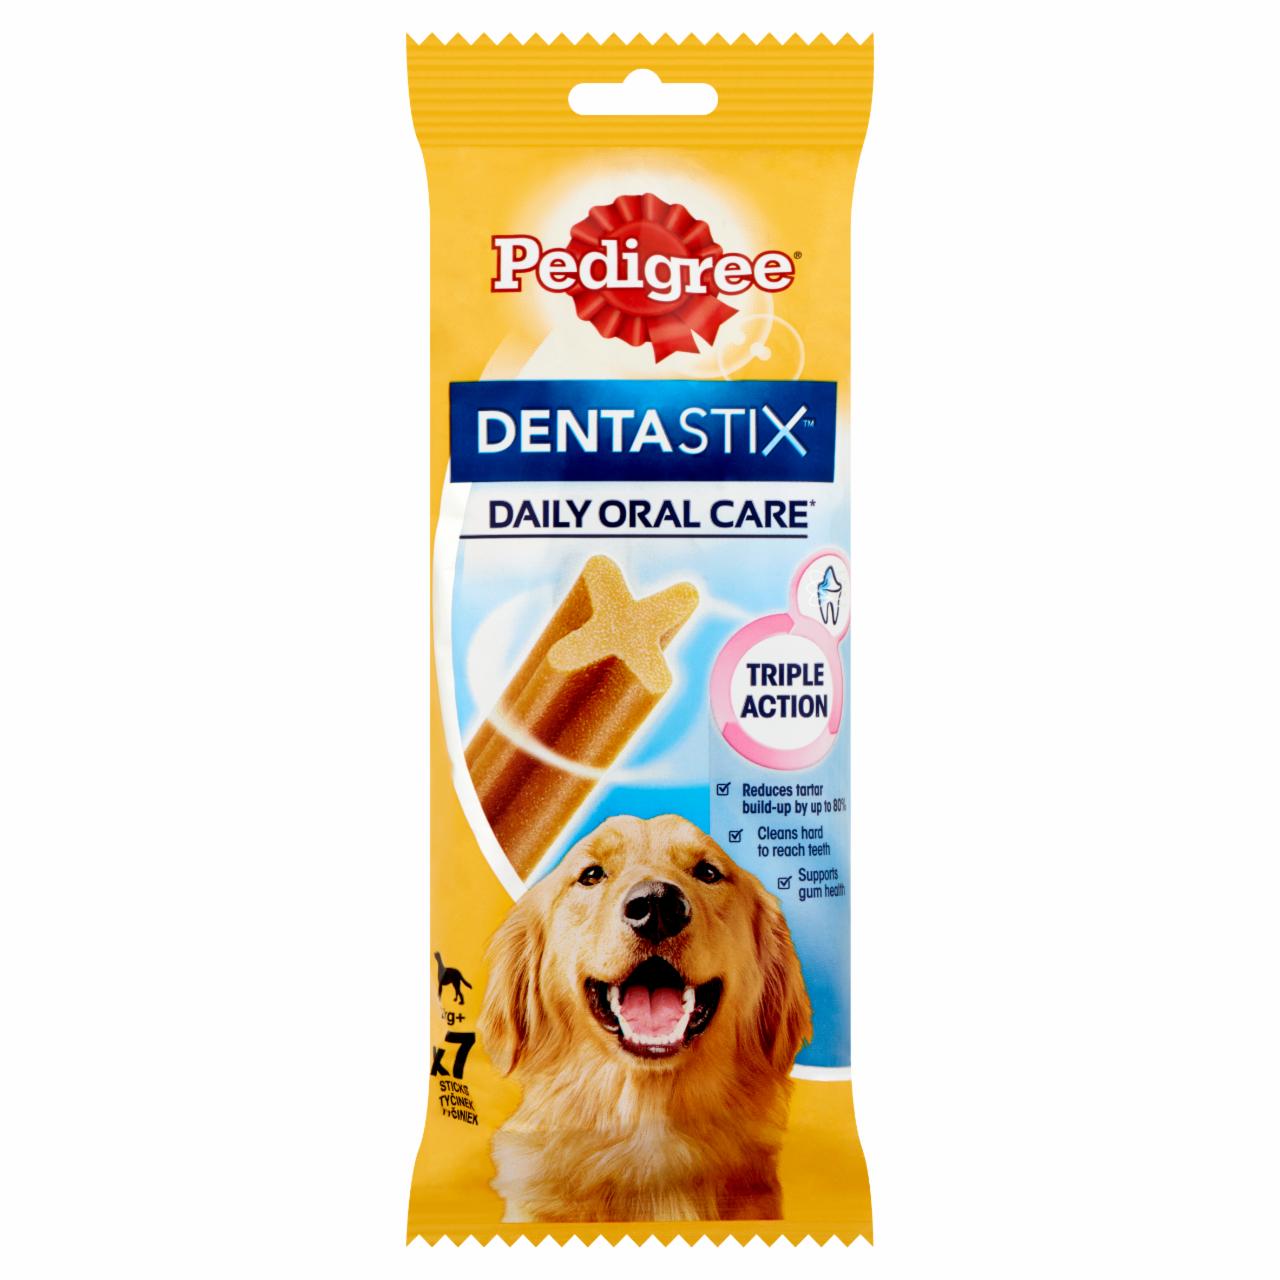 Képek - Pedigree DentaStix Daily Oral Care kiegészítő eledel 4 hónapnál idősebb kutyák számára 25 kg+ 270 g